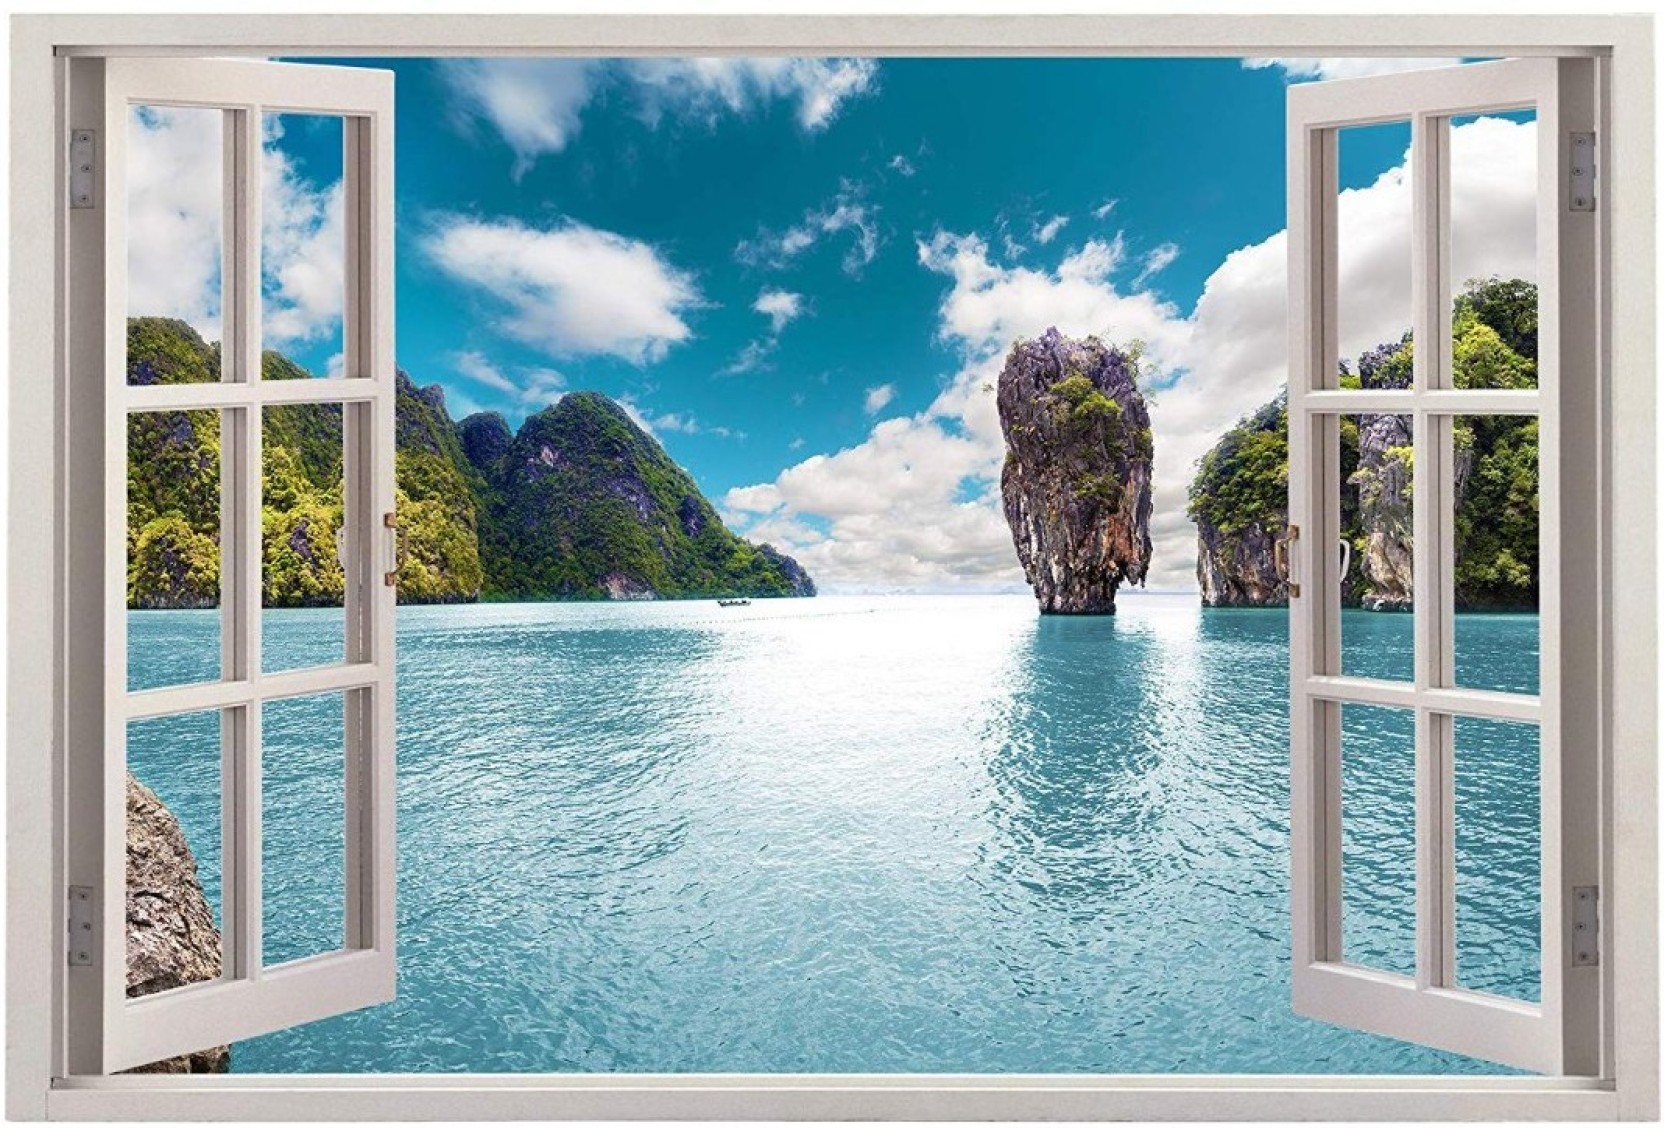 Thailand Islands , HD Wallpaper & Backgrounds